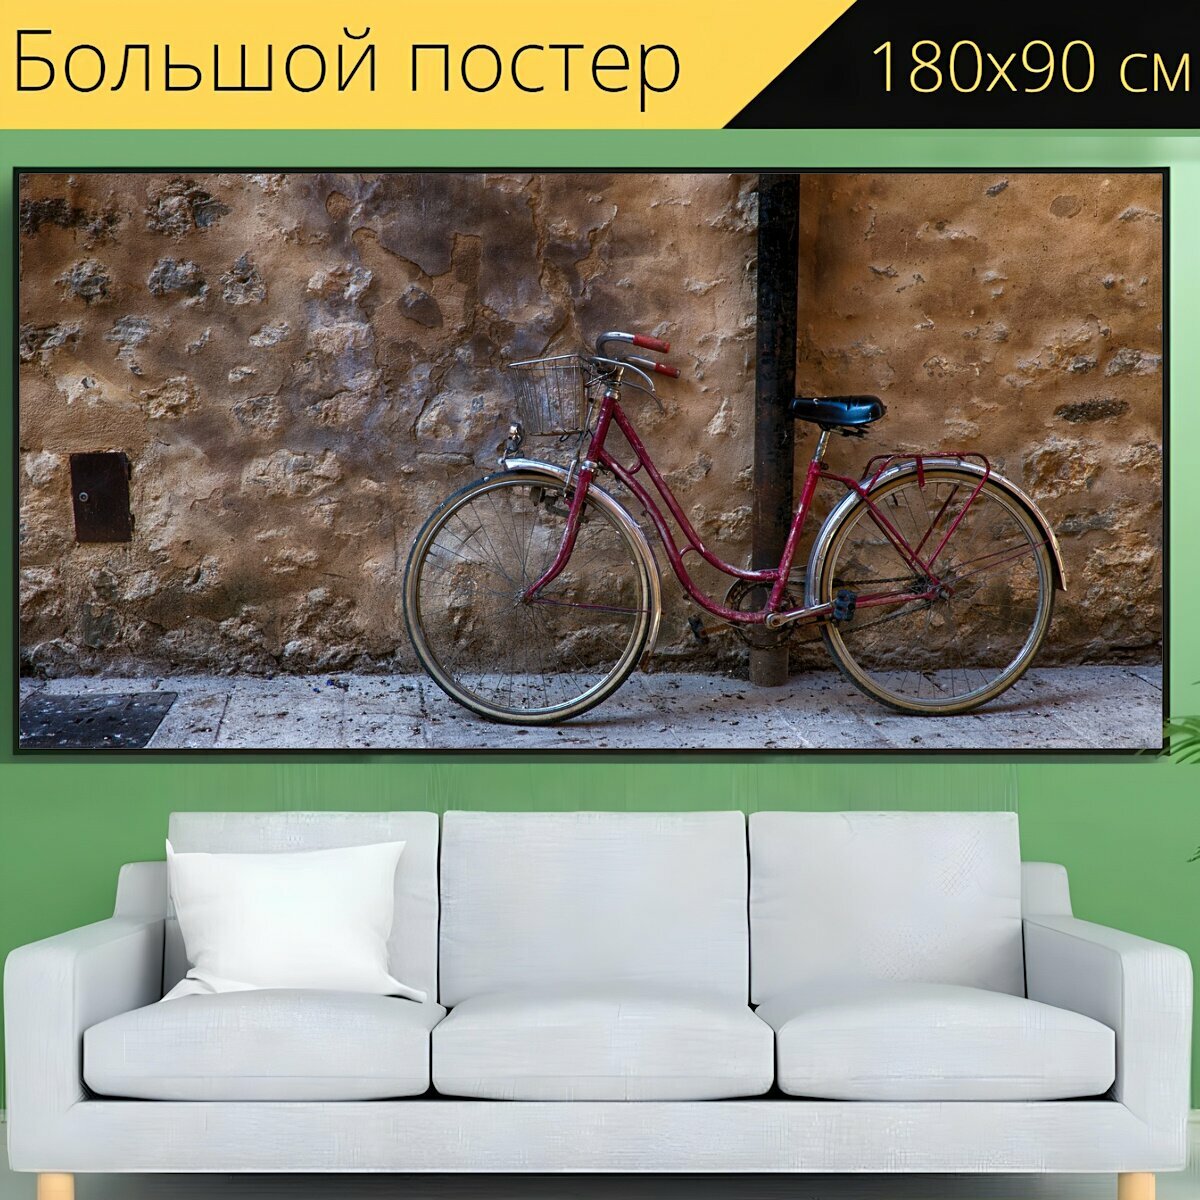 Большой постер "Велосипед, старый, улица" 180 x 90 см. для интерьера